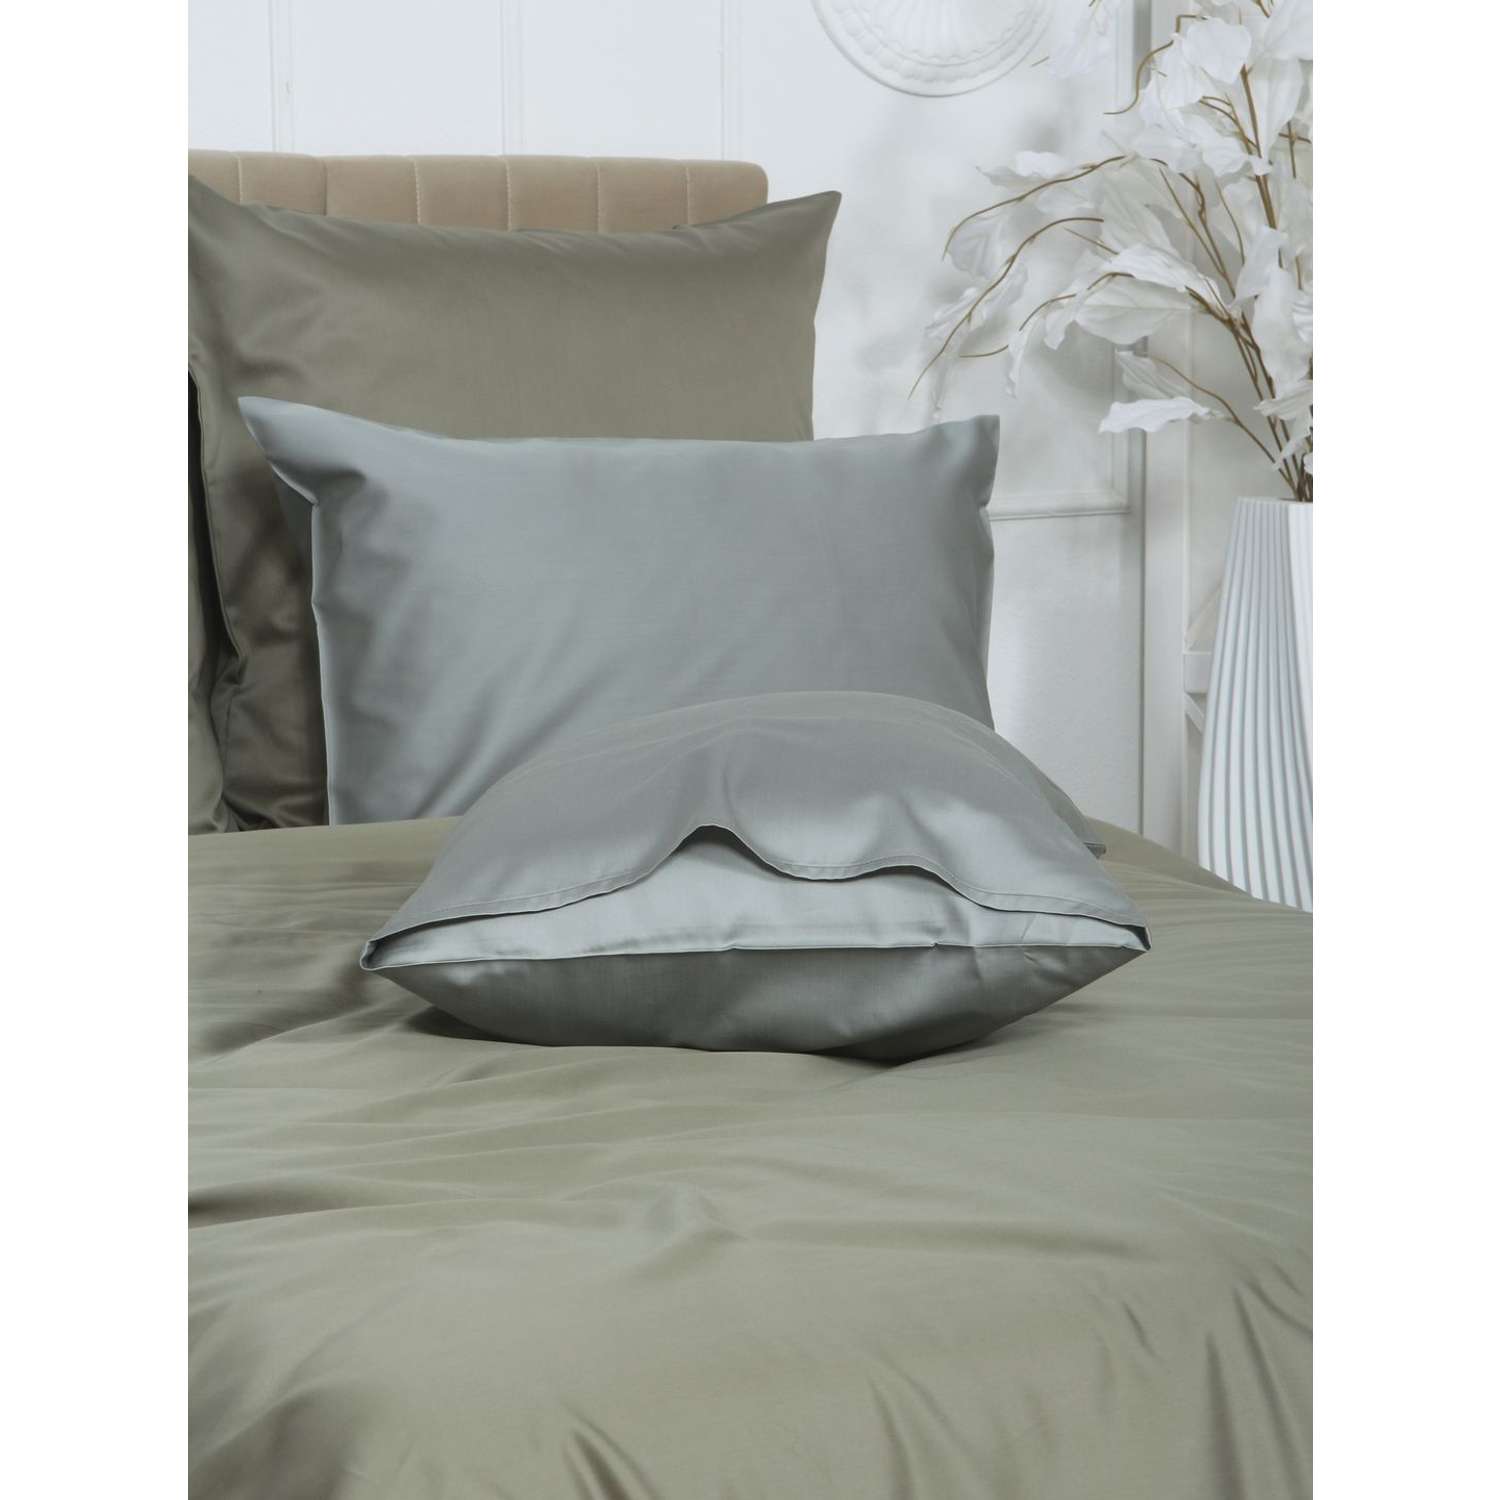 Комплект постельного белья Mona Liza 2 спальный ML Luxury sage тенсель лиоцелл шалфей/камень - фото 3